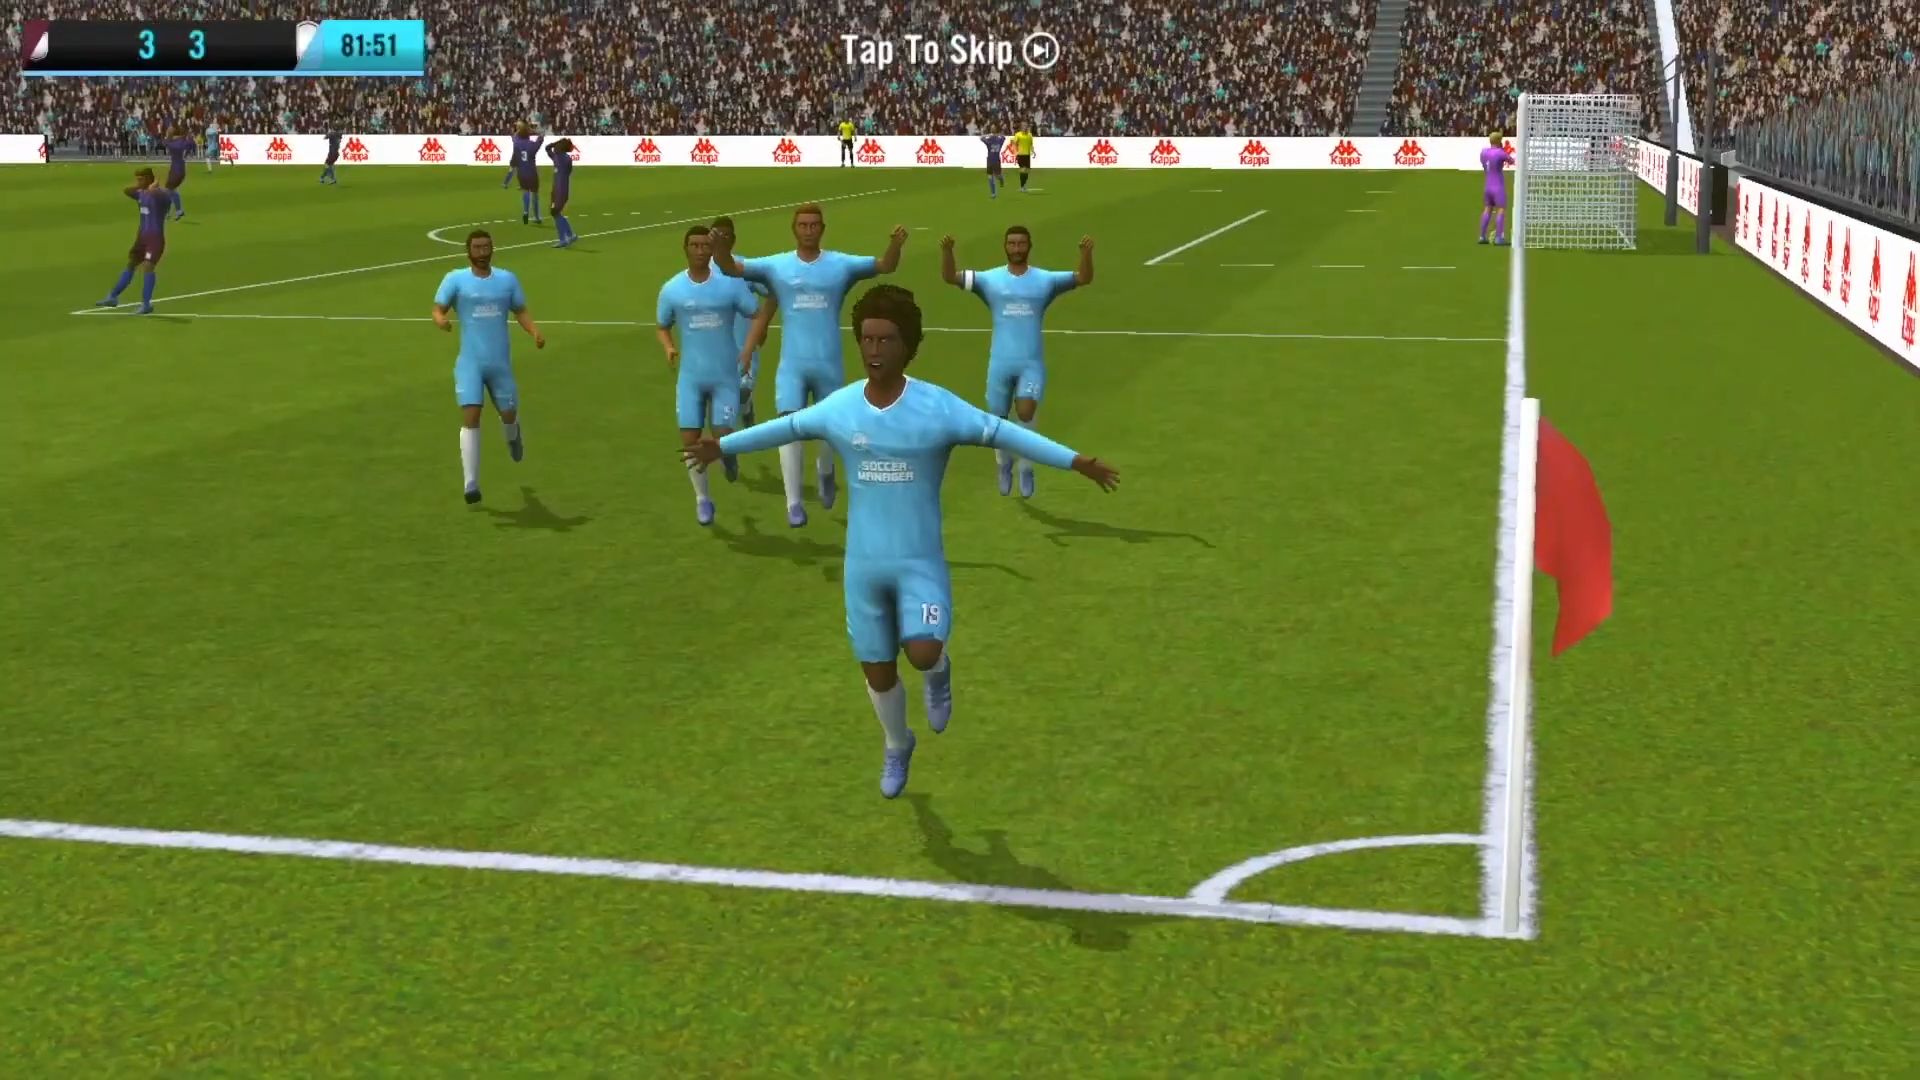 Soccer Manager 2021 capture d'écran 1